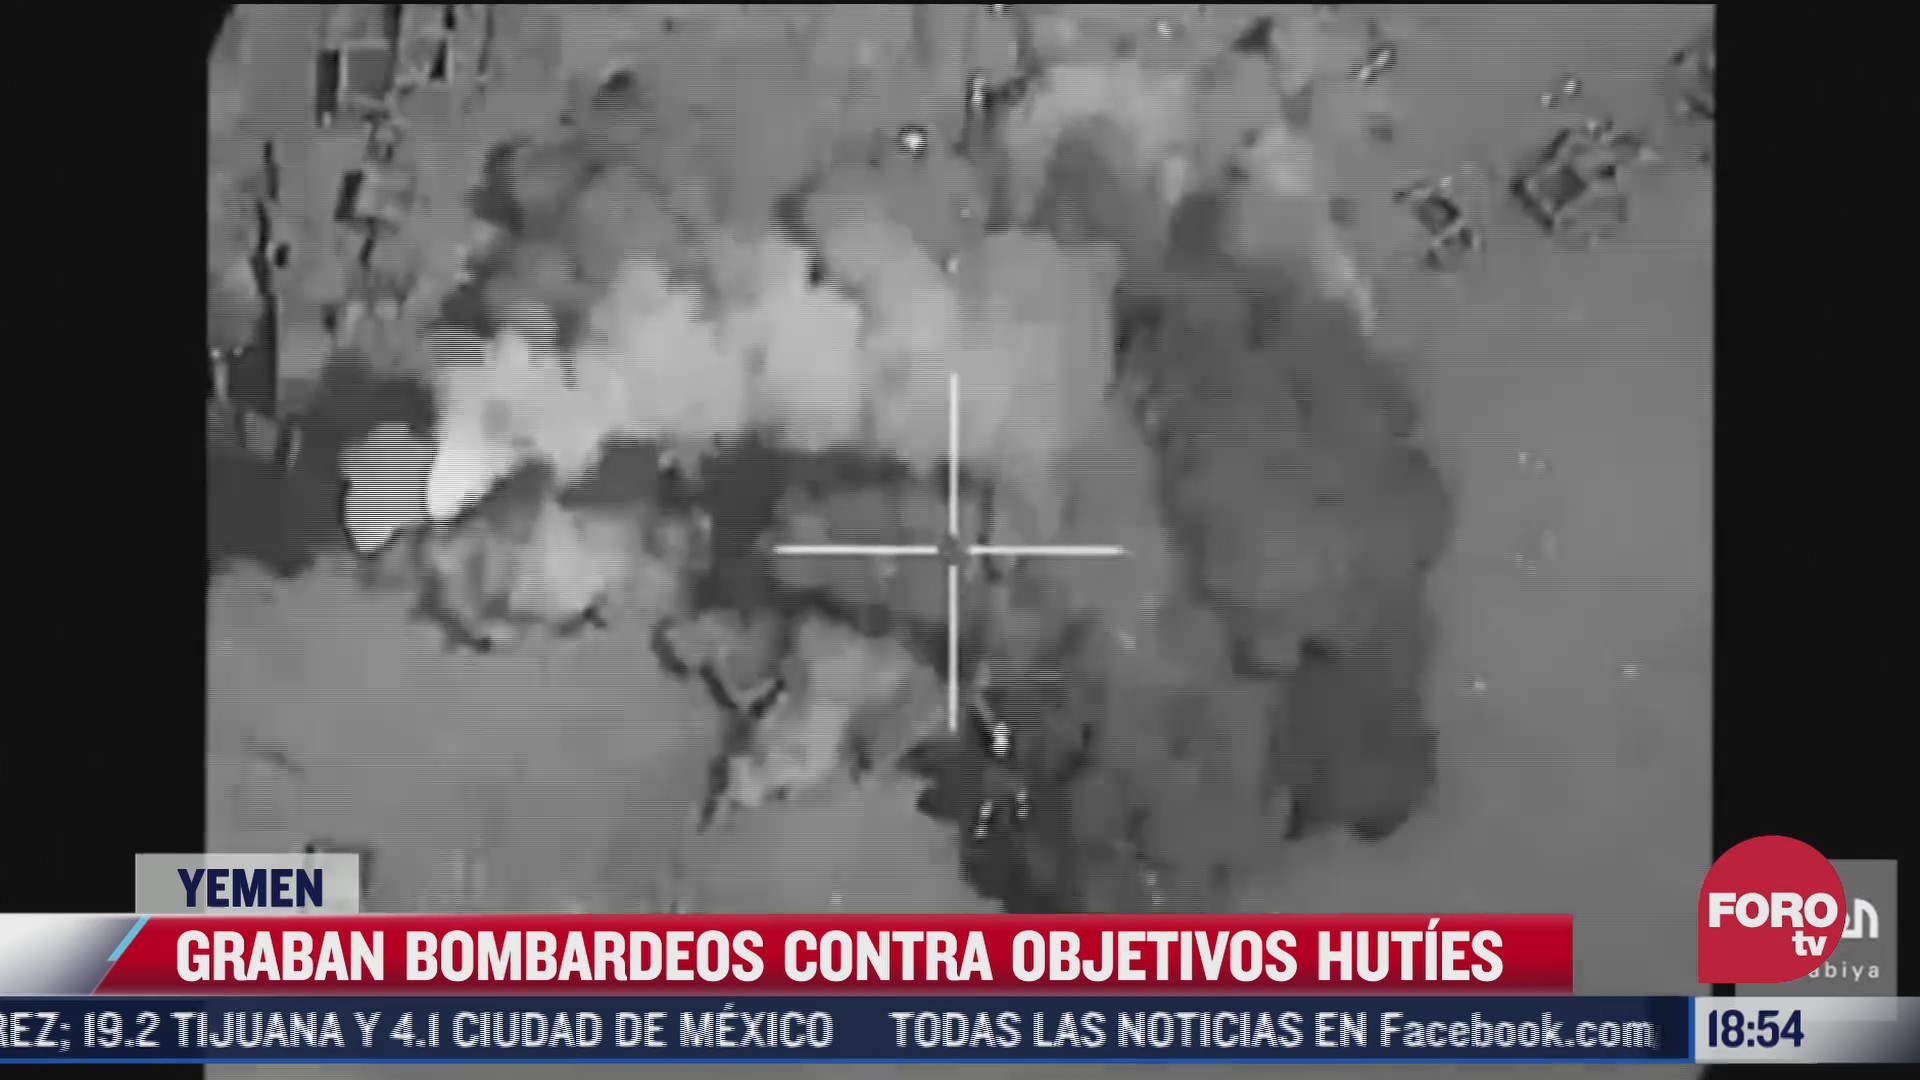 captan imagenes aereas de bombardeo en yemen